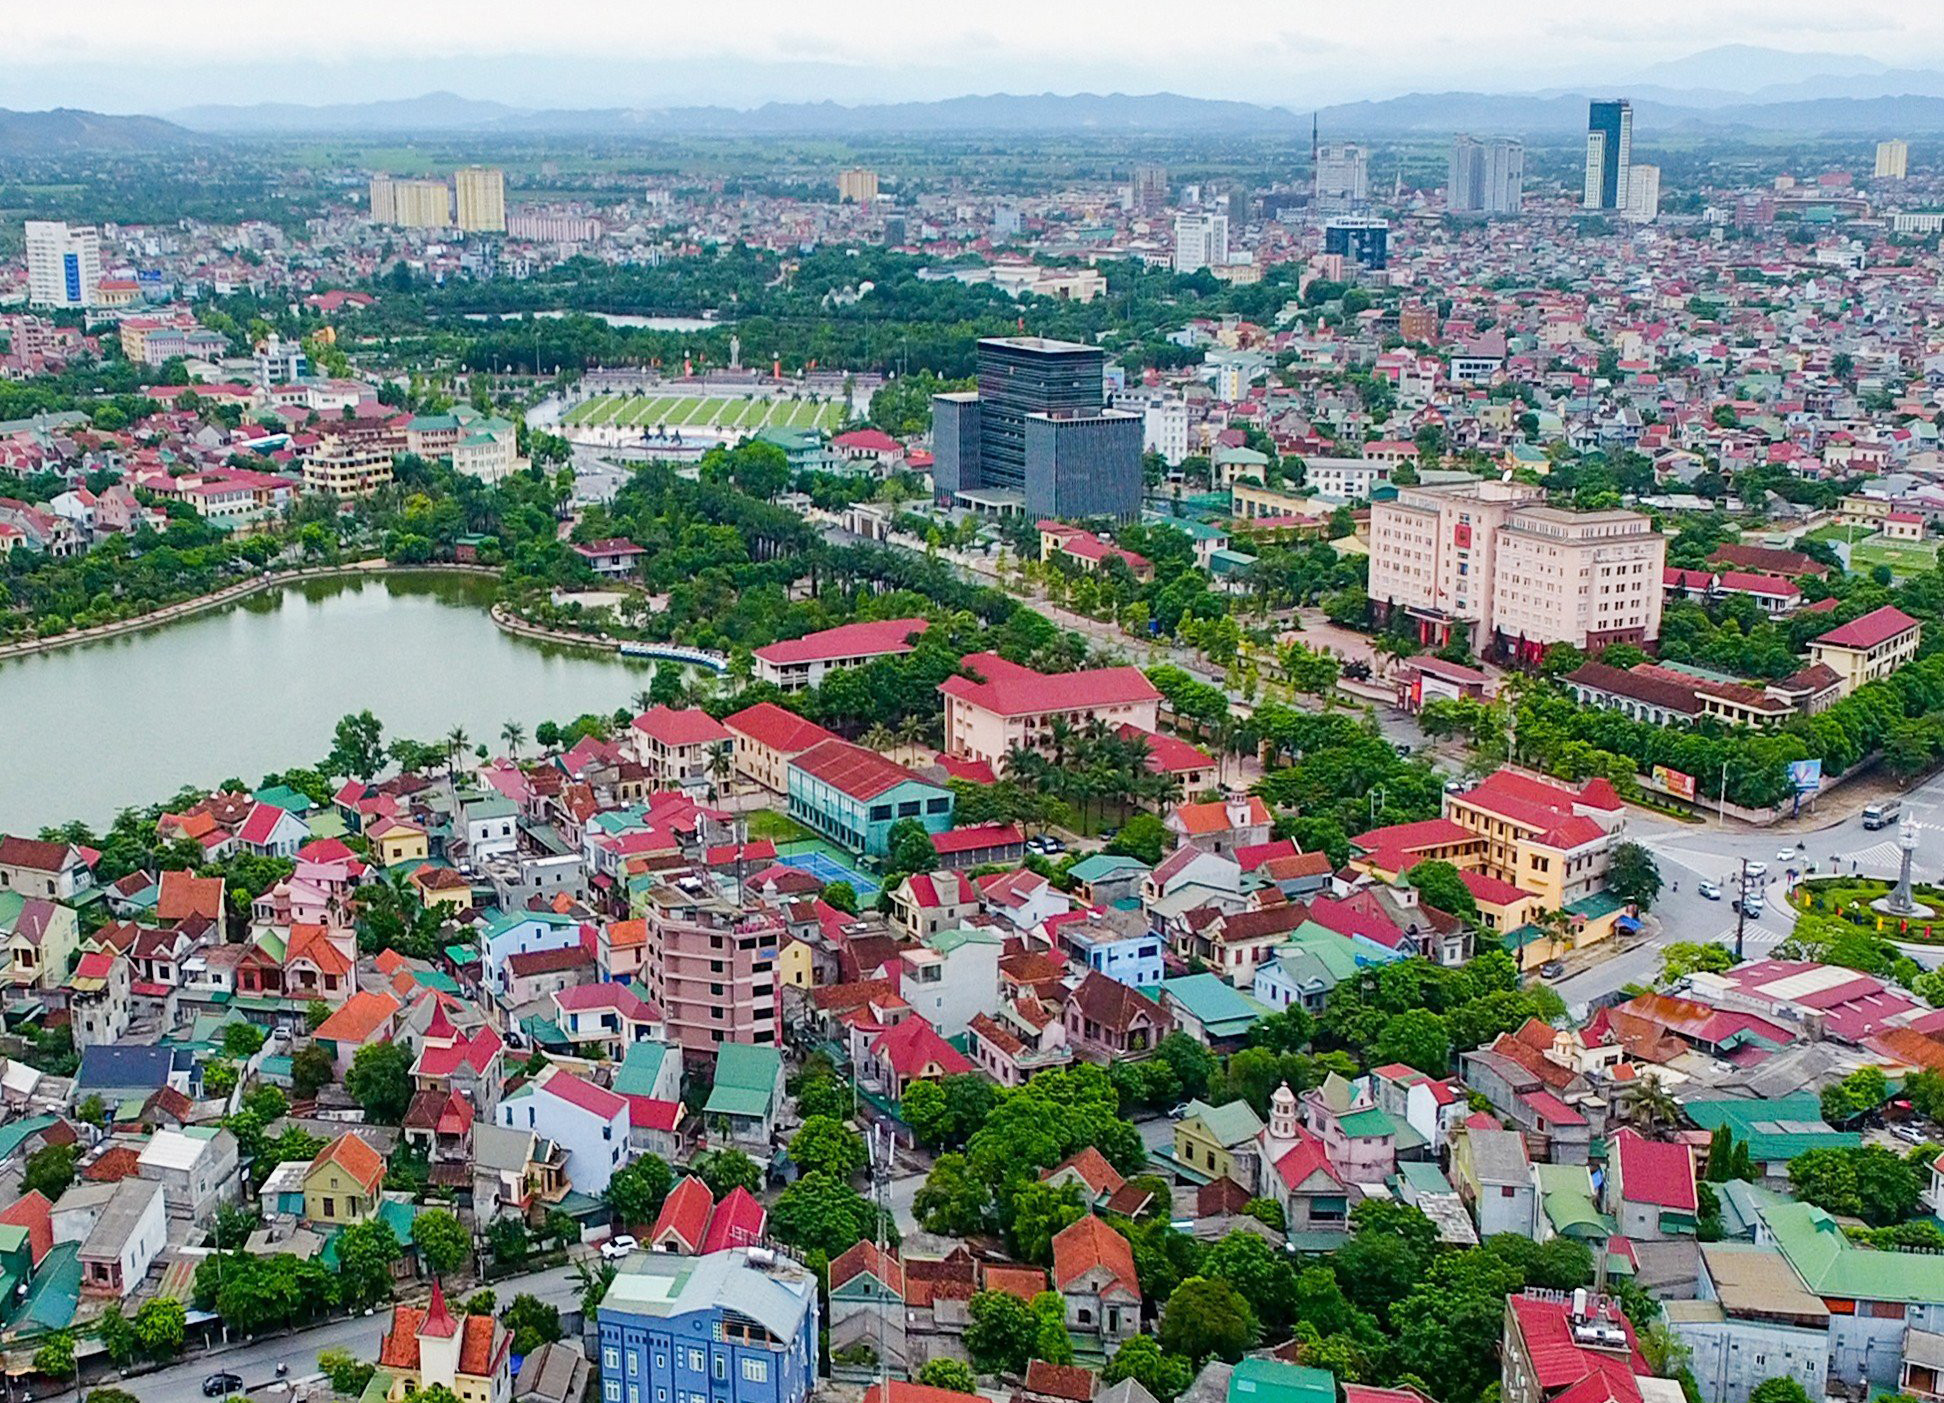 Kế hoạch thực hiện Quy hoạch tỉnh Nghệ An thời kỳ 2021 - 2030, tầm nhìn đến năm 2050